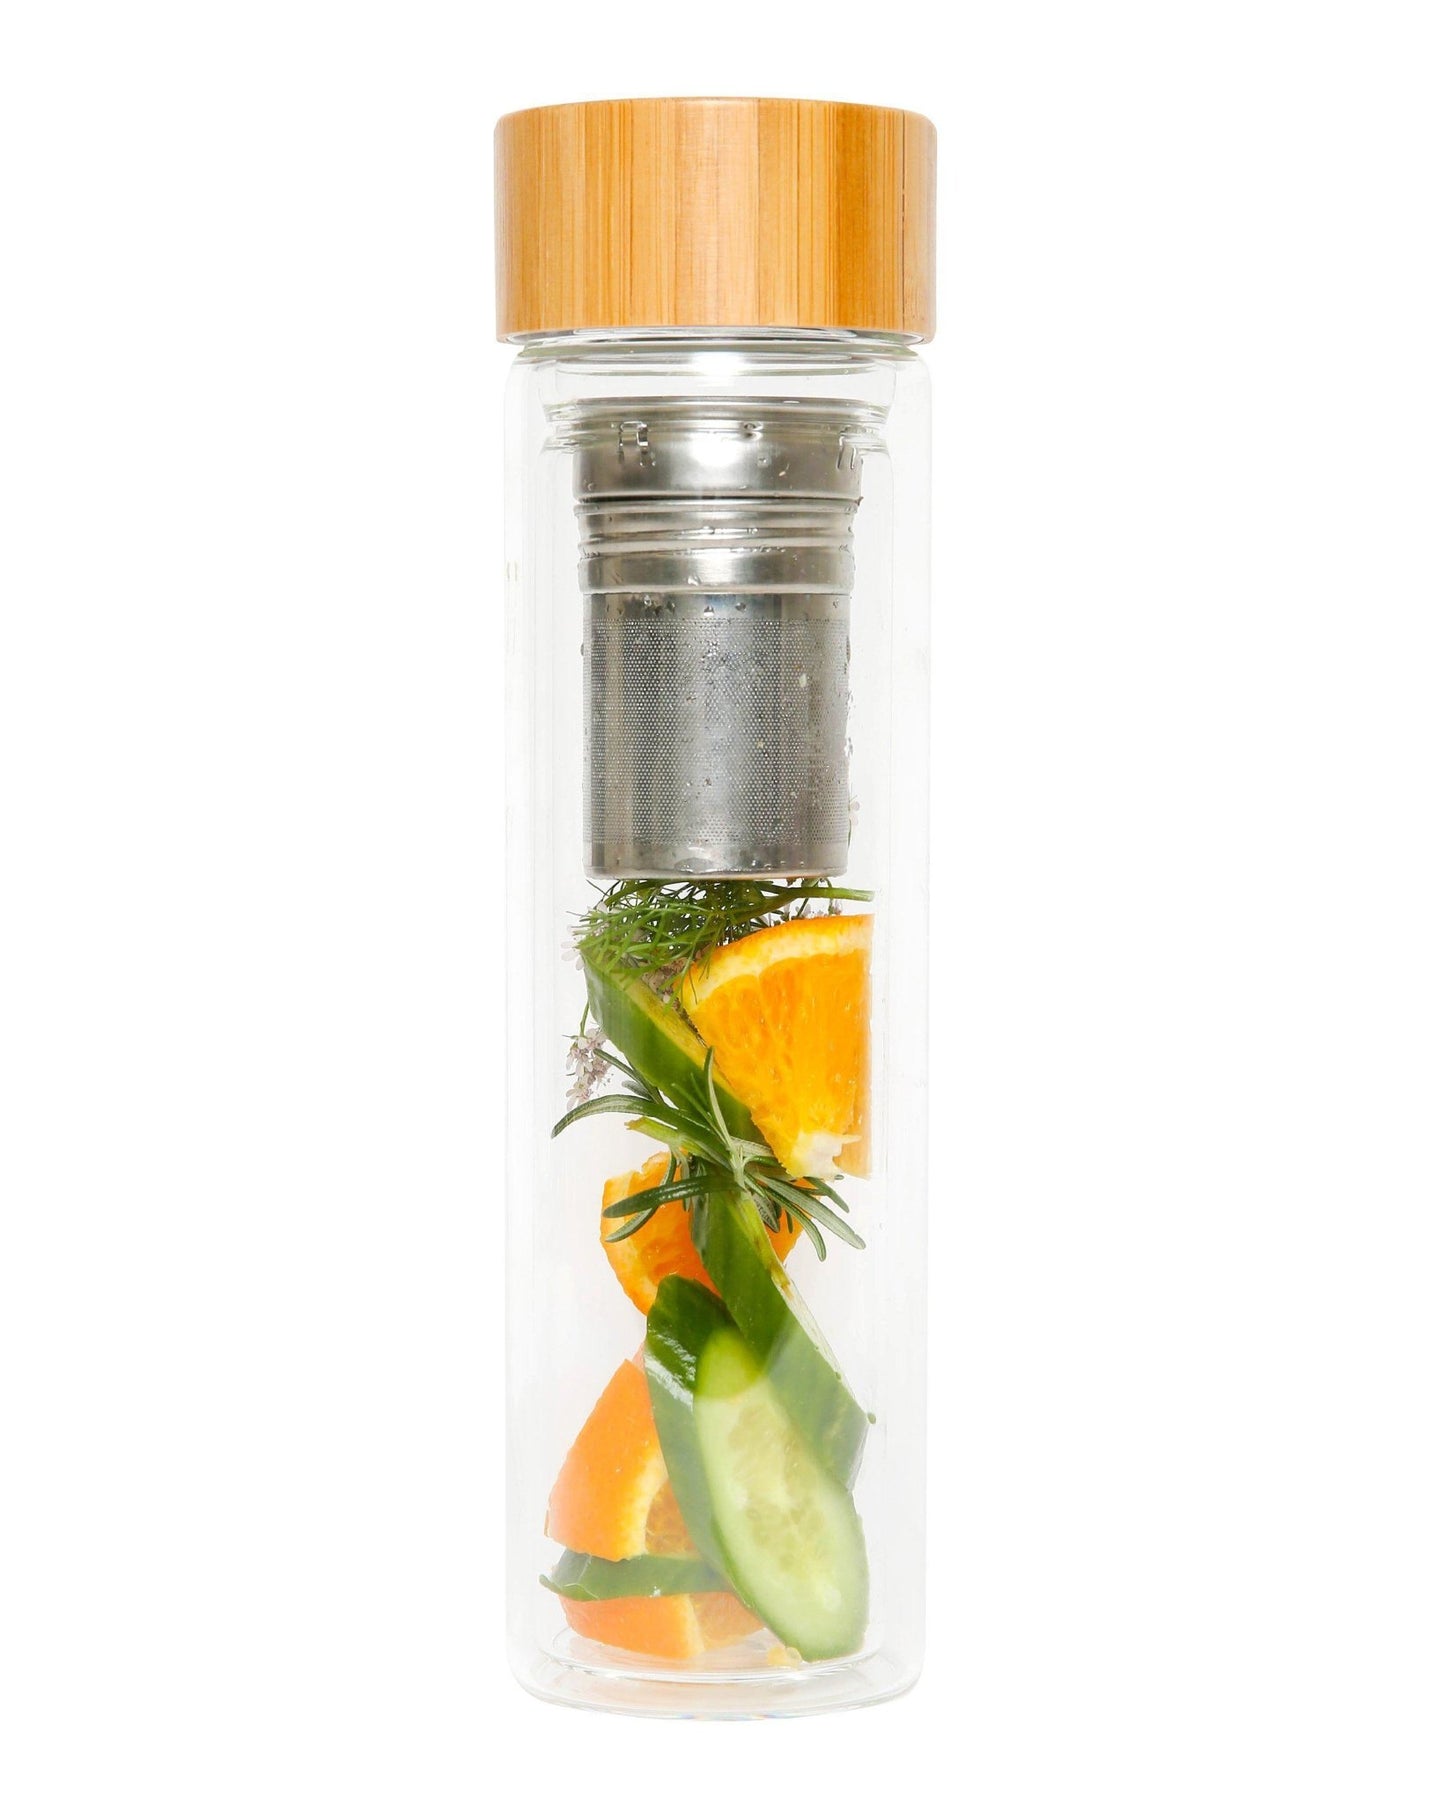 Kodu Glask - Glass Tea Infuser Bottle - Hot & Cold Liquids - mykodu